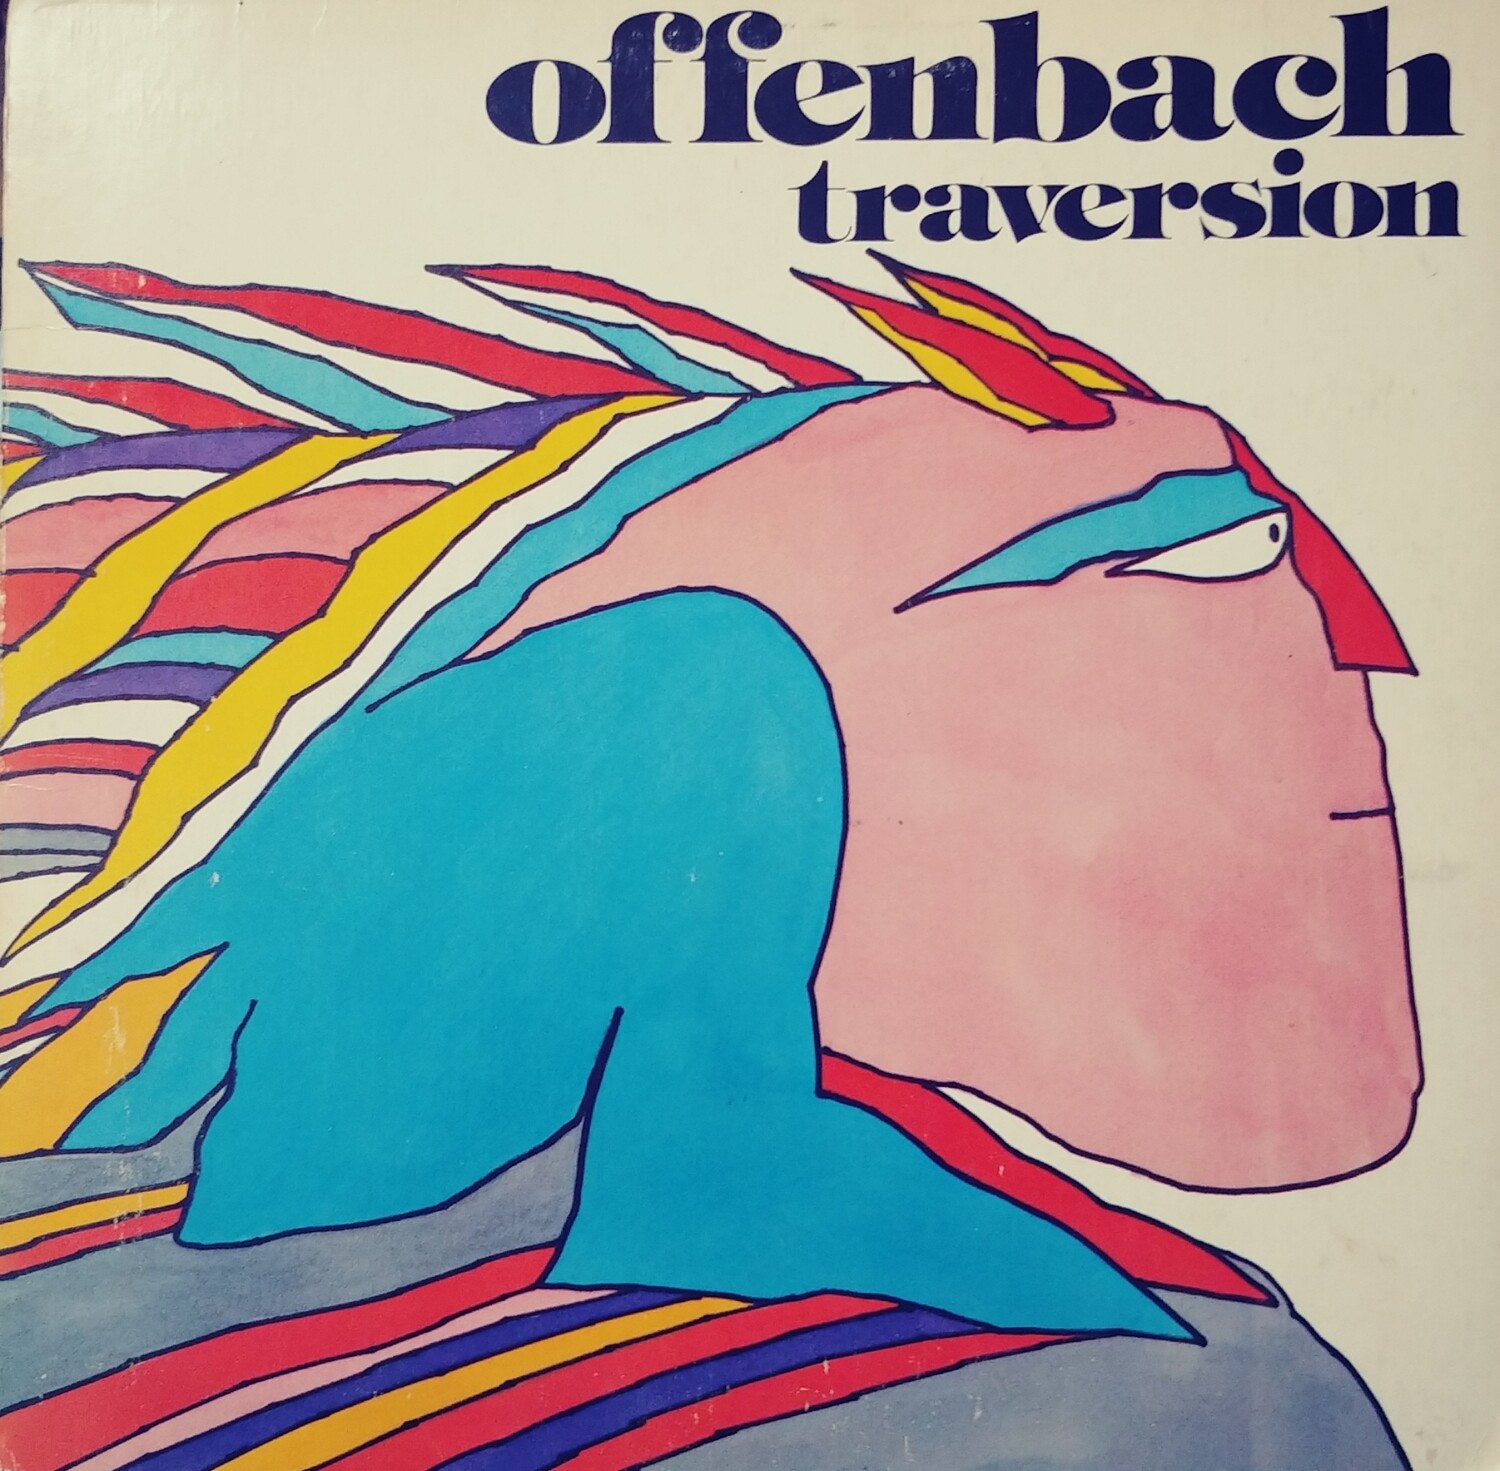 Offenbach - Traversion